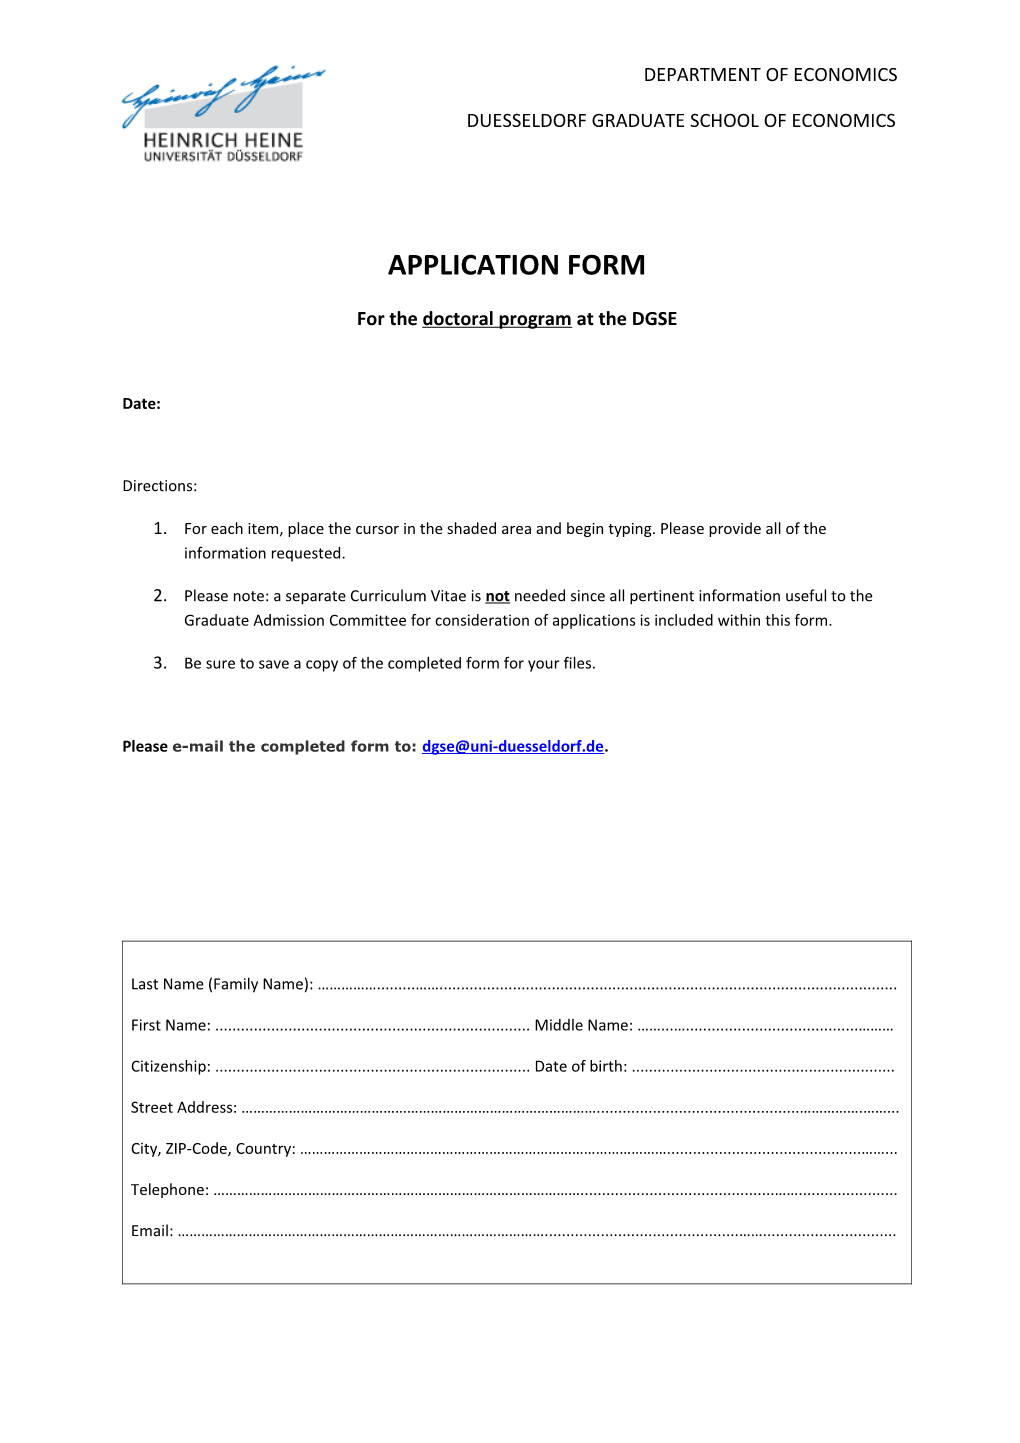 DGSE - Heinrich-Heine University Duesseldorf - Application Form